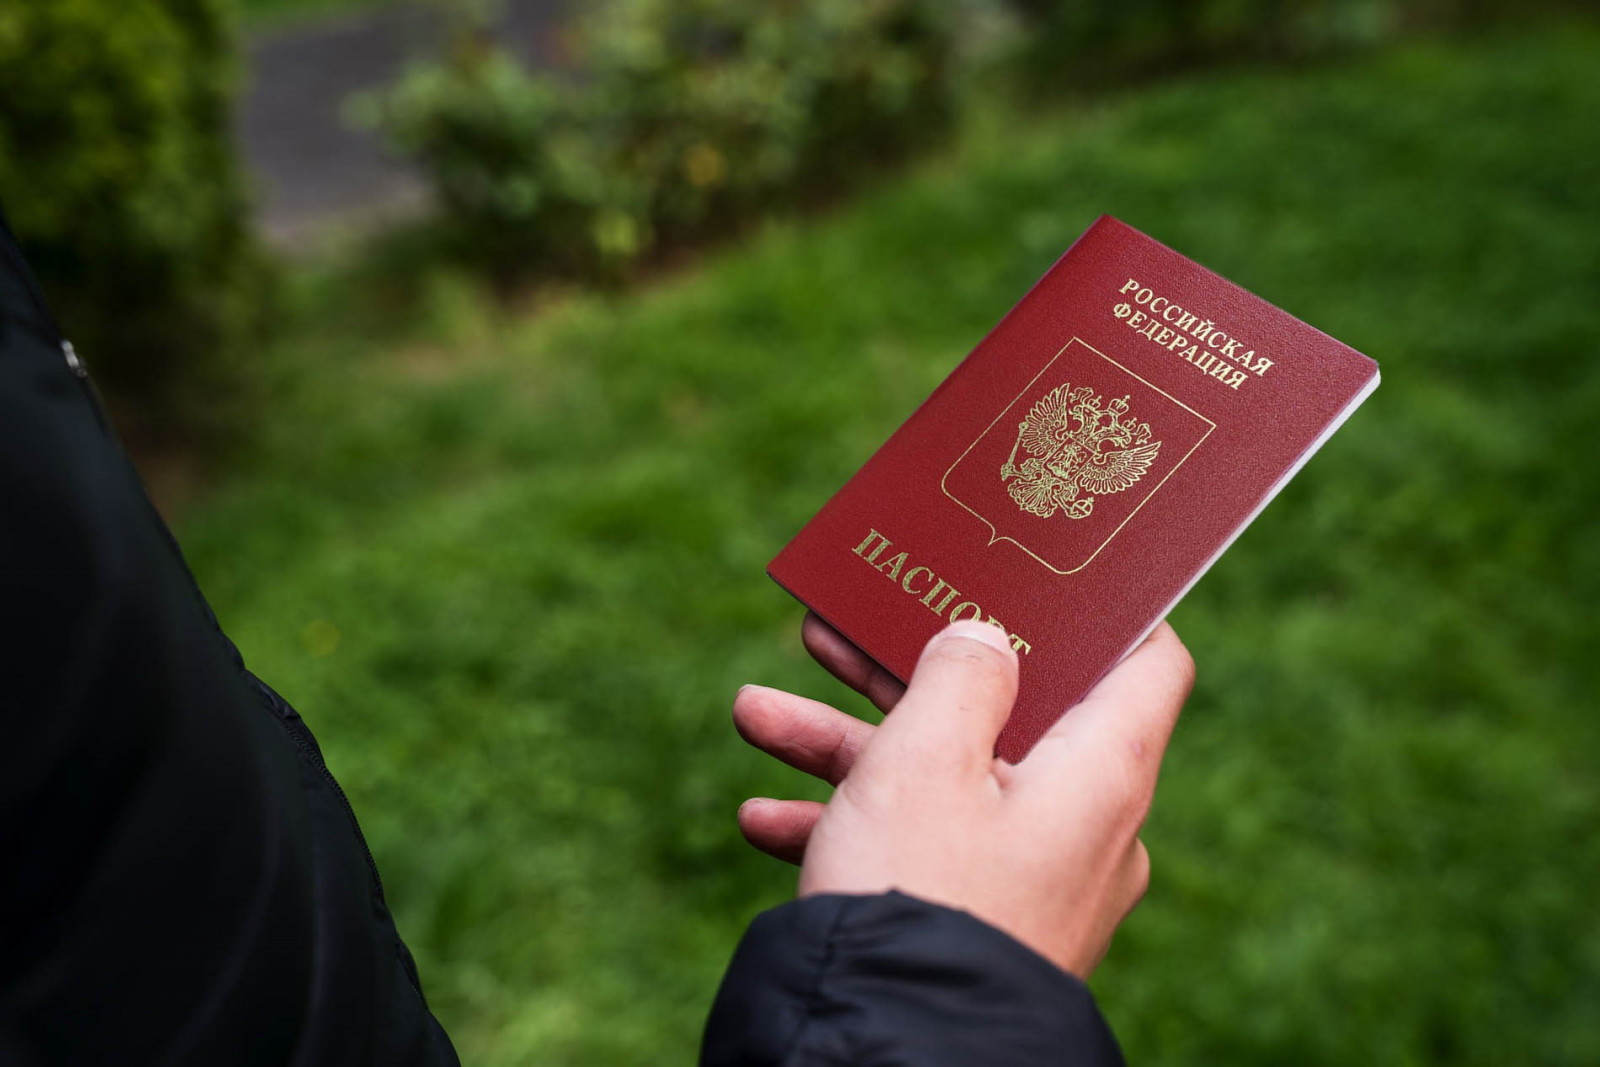 ЗАКОННО ЛИ требовать паспорт при возврате товара?